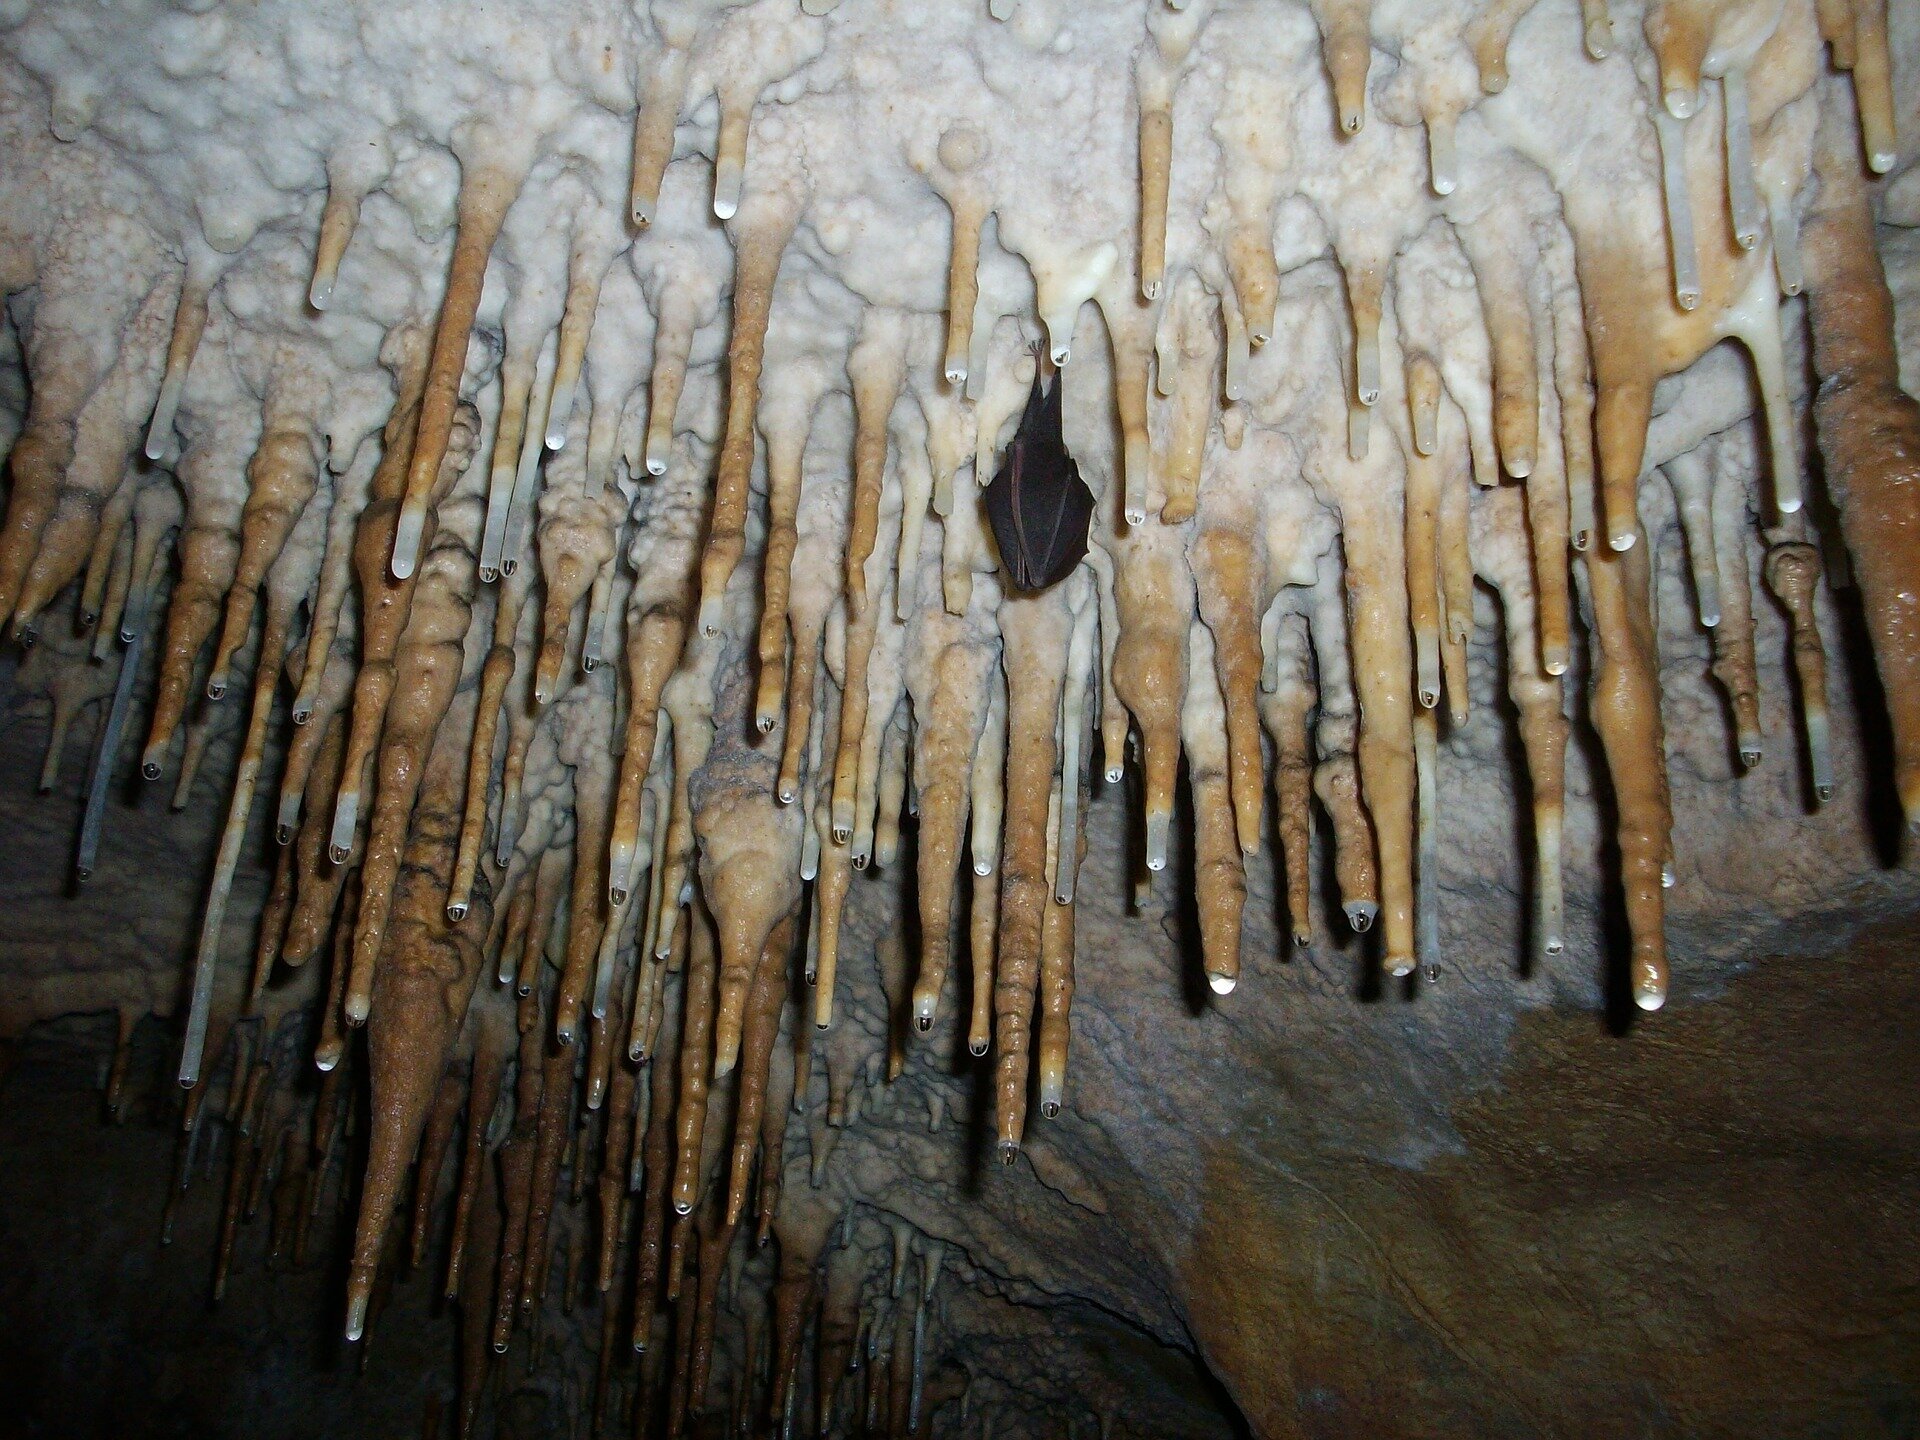 Zdjęcie przedstawia zwisające ze stropu jaskini stalaktyty - niewielkie stożki przypominające sople lodu, które tworzy węglan wapnia. Pomiędzy nimi wisi nietoperz.